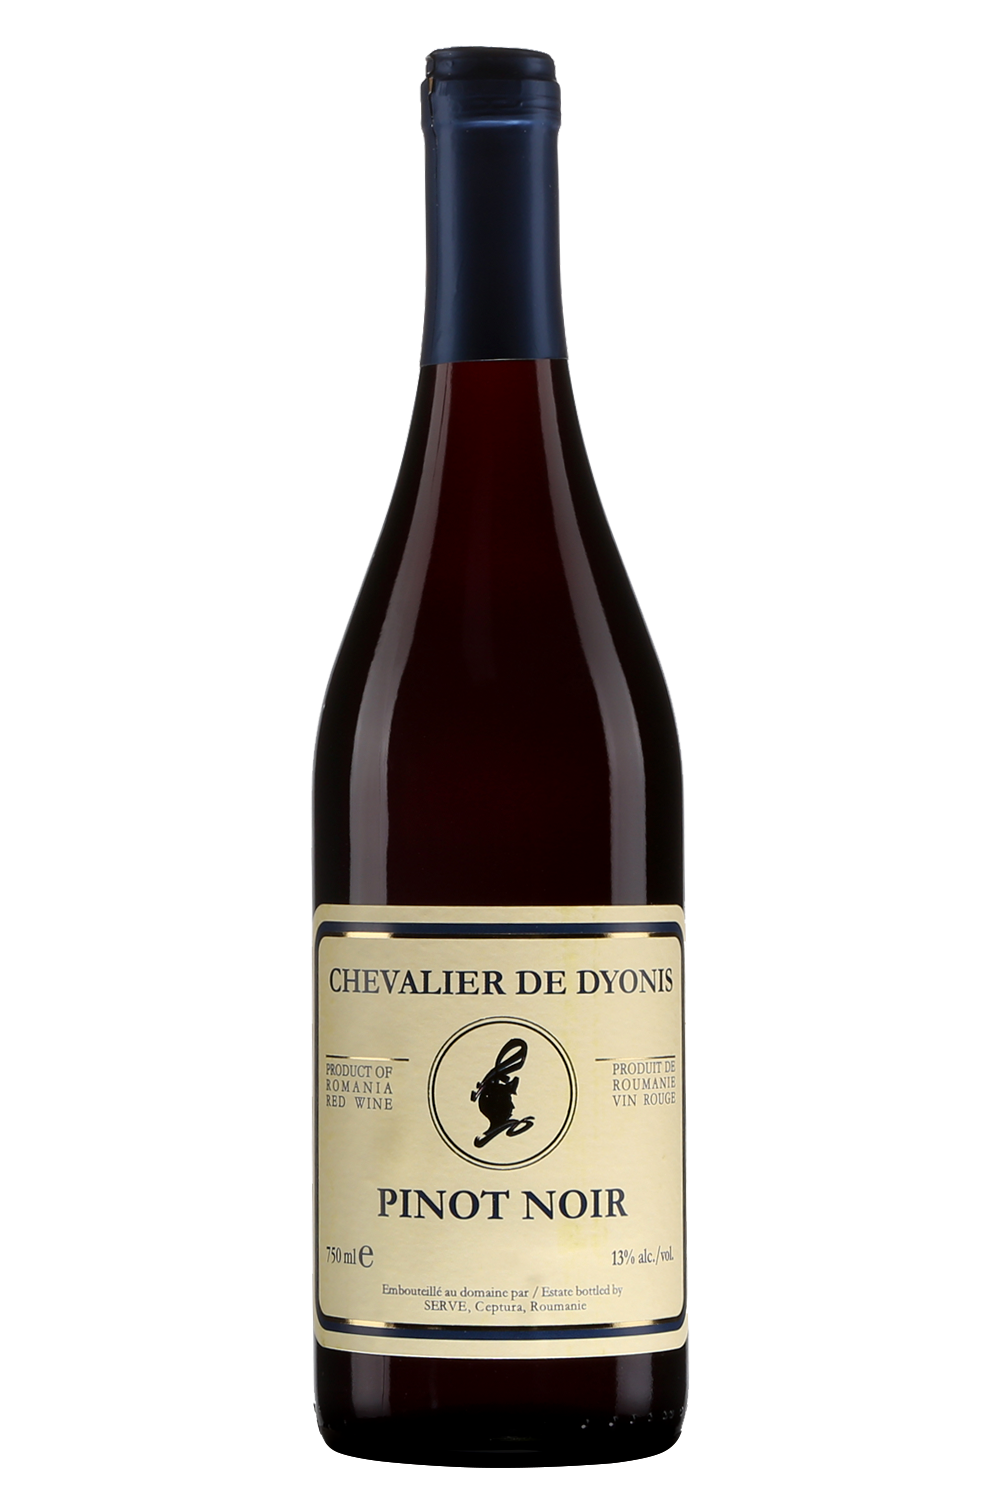 Chevalier de Dyonis Pinot Noir, $9.50